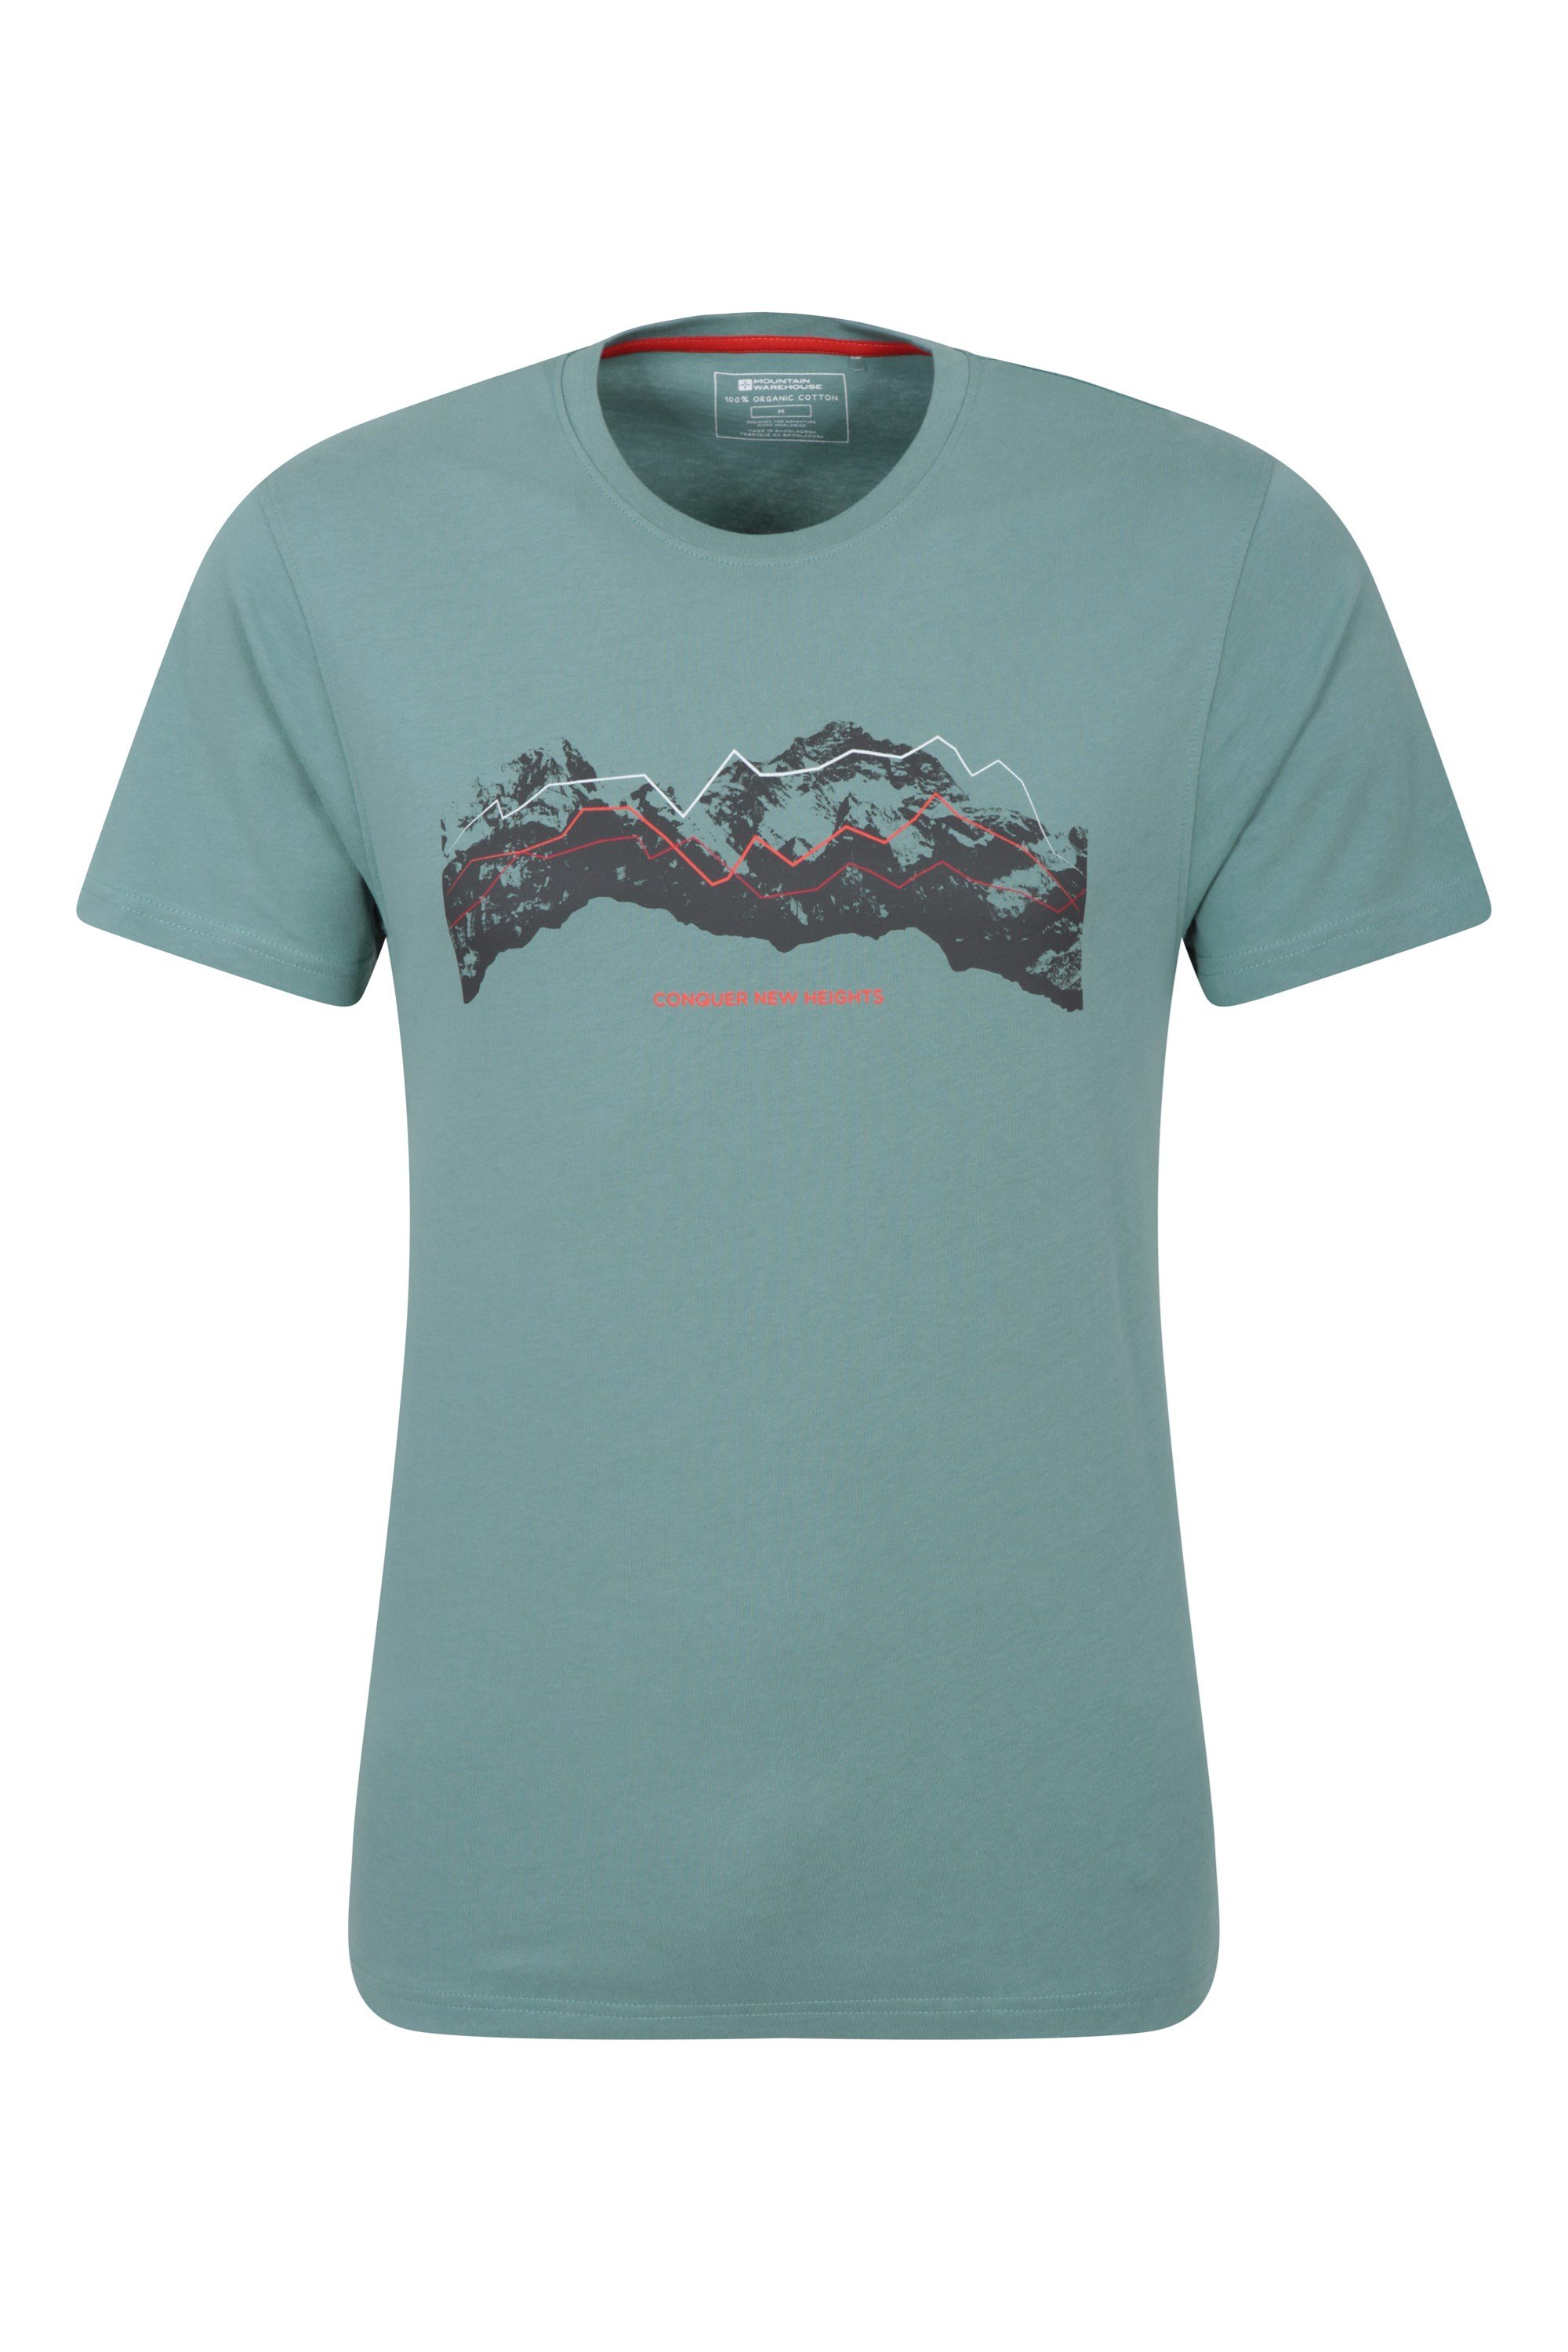 T-Shirt Tech Organique Mountains Homme - Vert